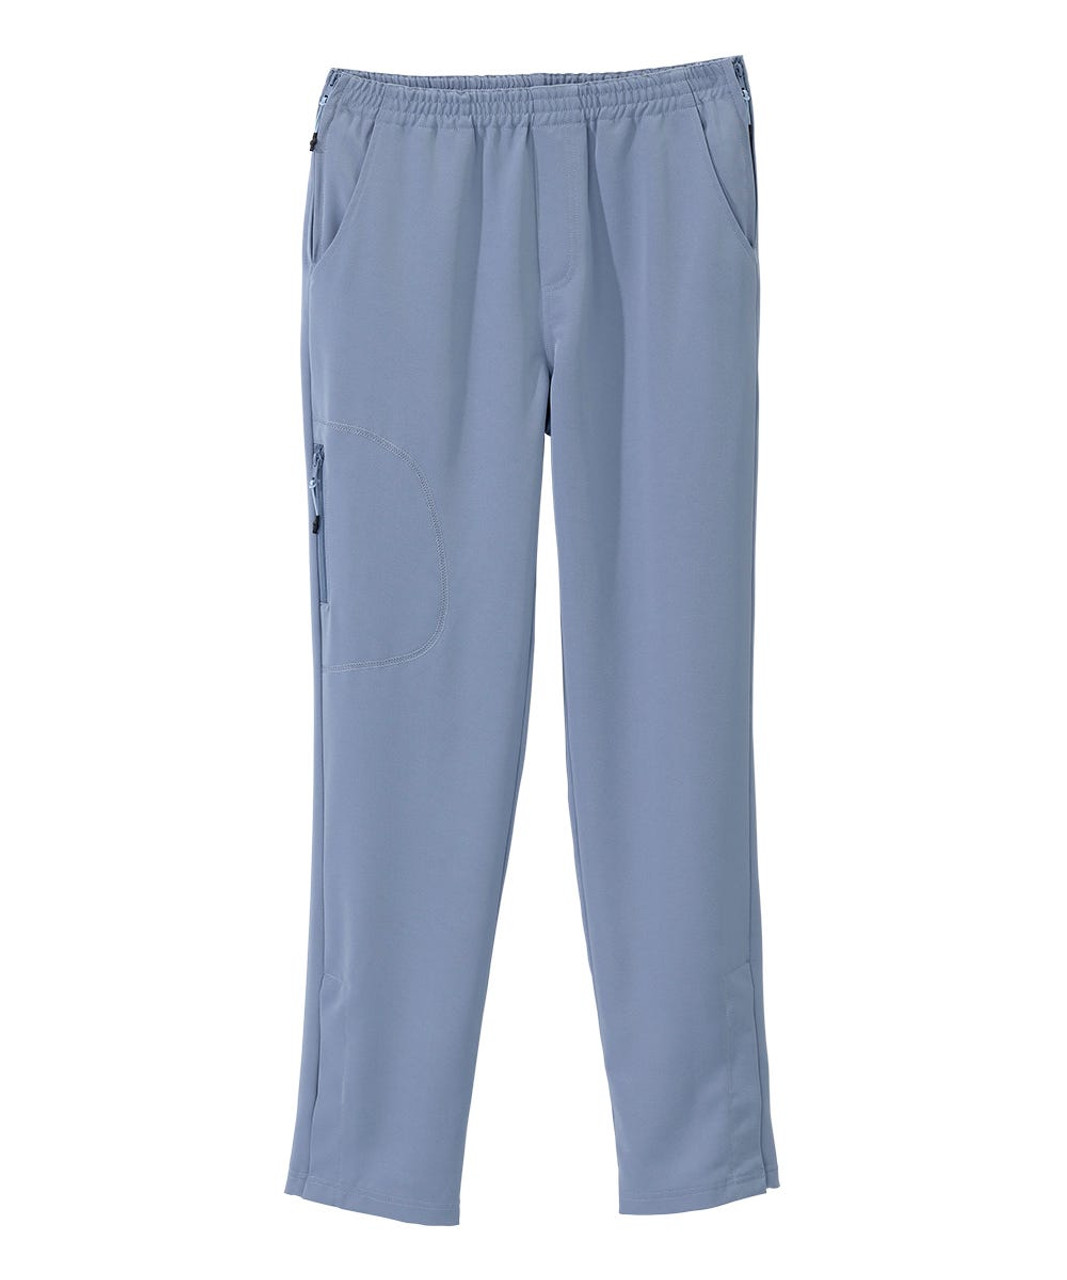 Silverts SV028 Senior Women's Side Zip Adaptive Pant Breezy Blue, Size=XL, SV028-SV2003-XL